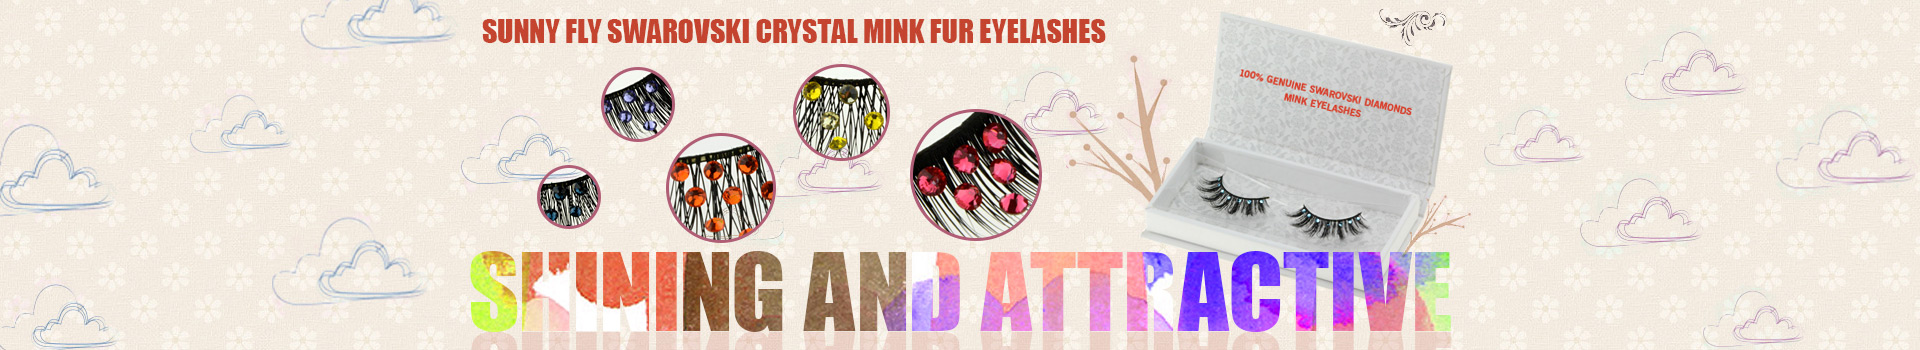 Swarovski Crystal Mink Fur Eyelashes MS41